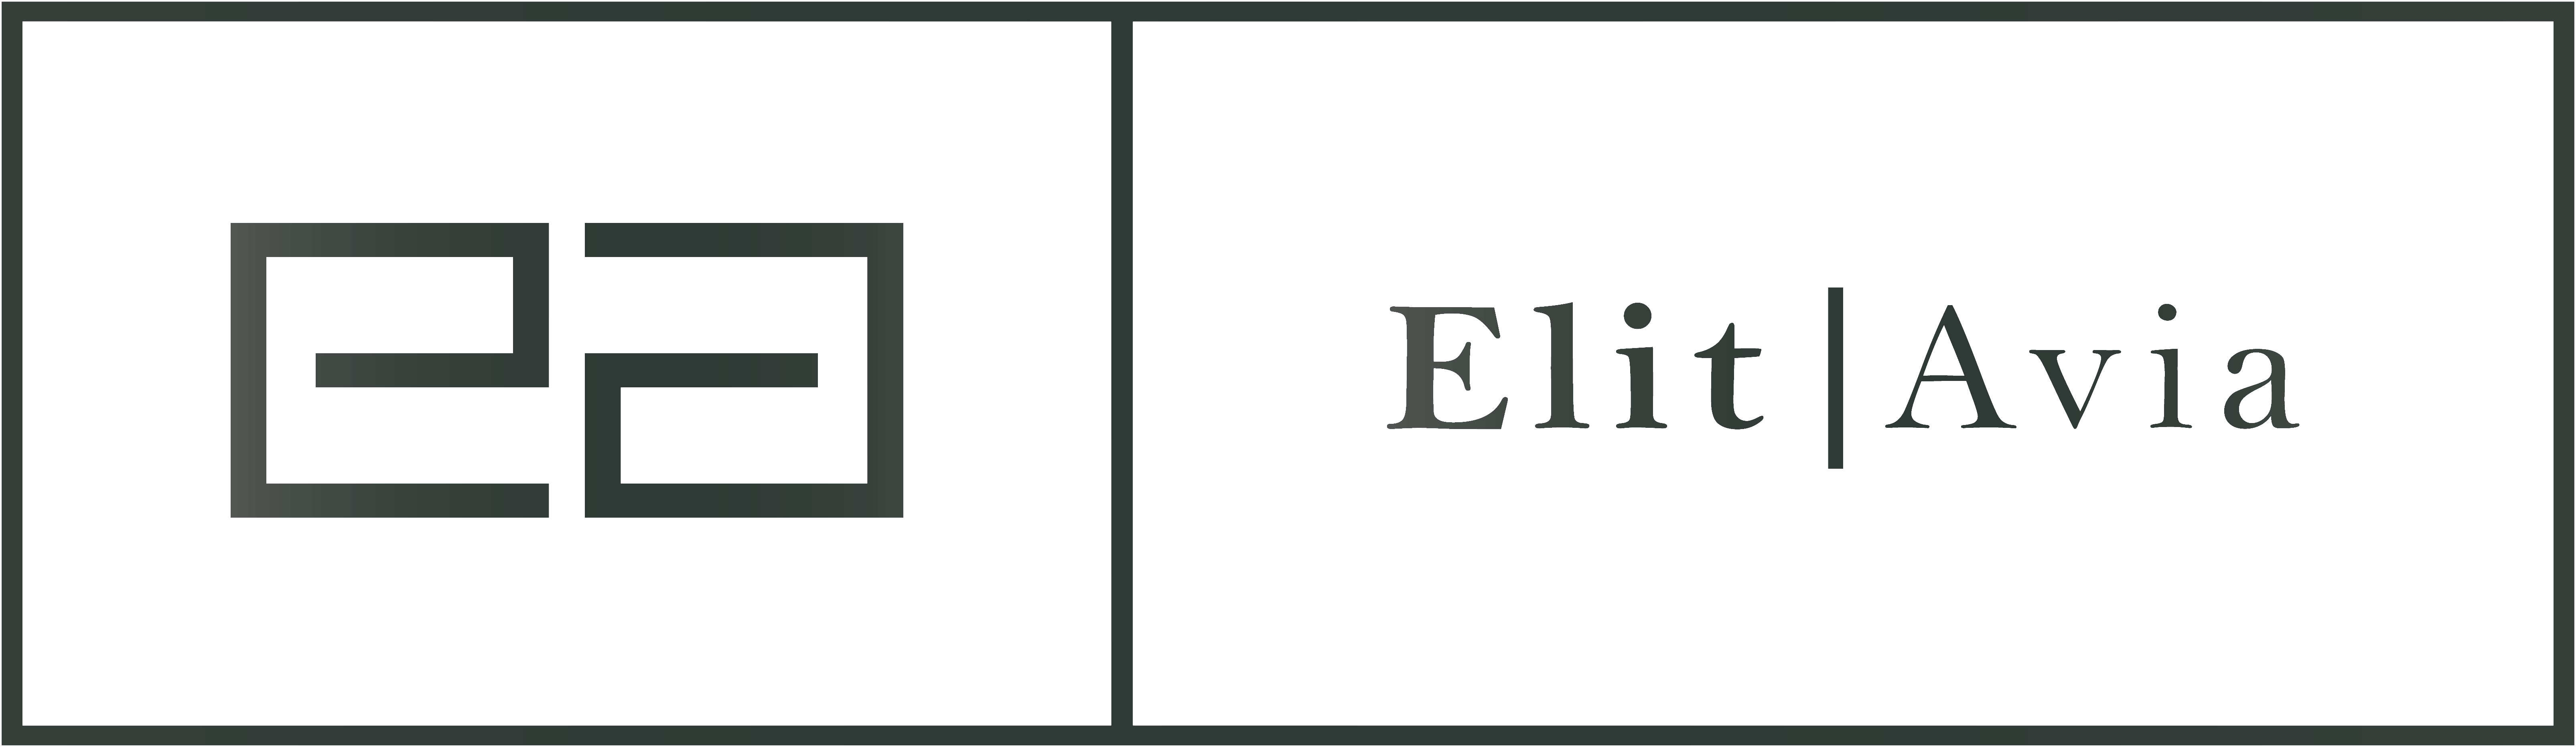 ElitAvia-Logo